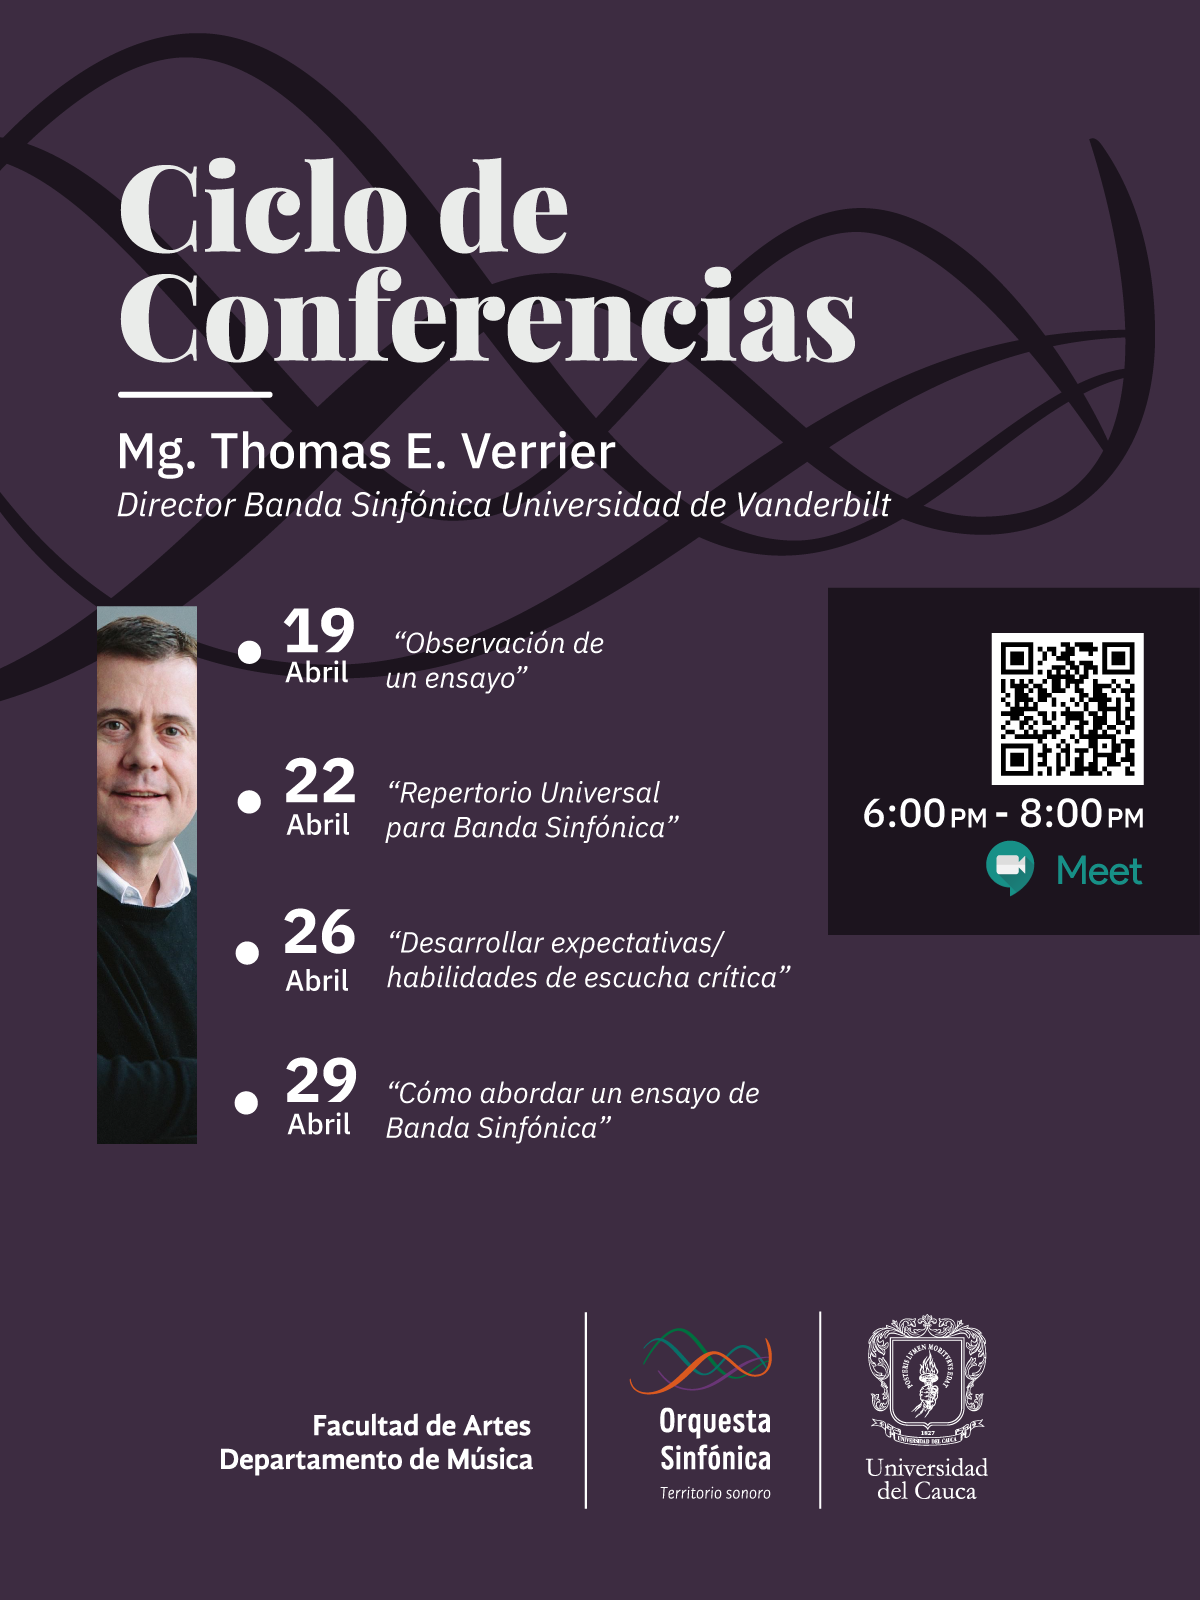 Ciclo de Conferencias con Thomas E. Verrier